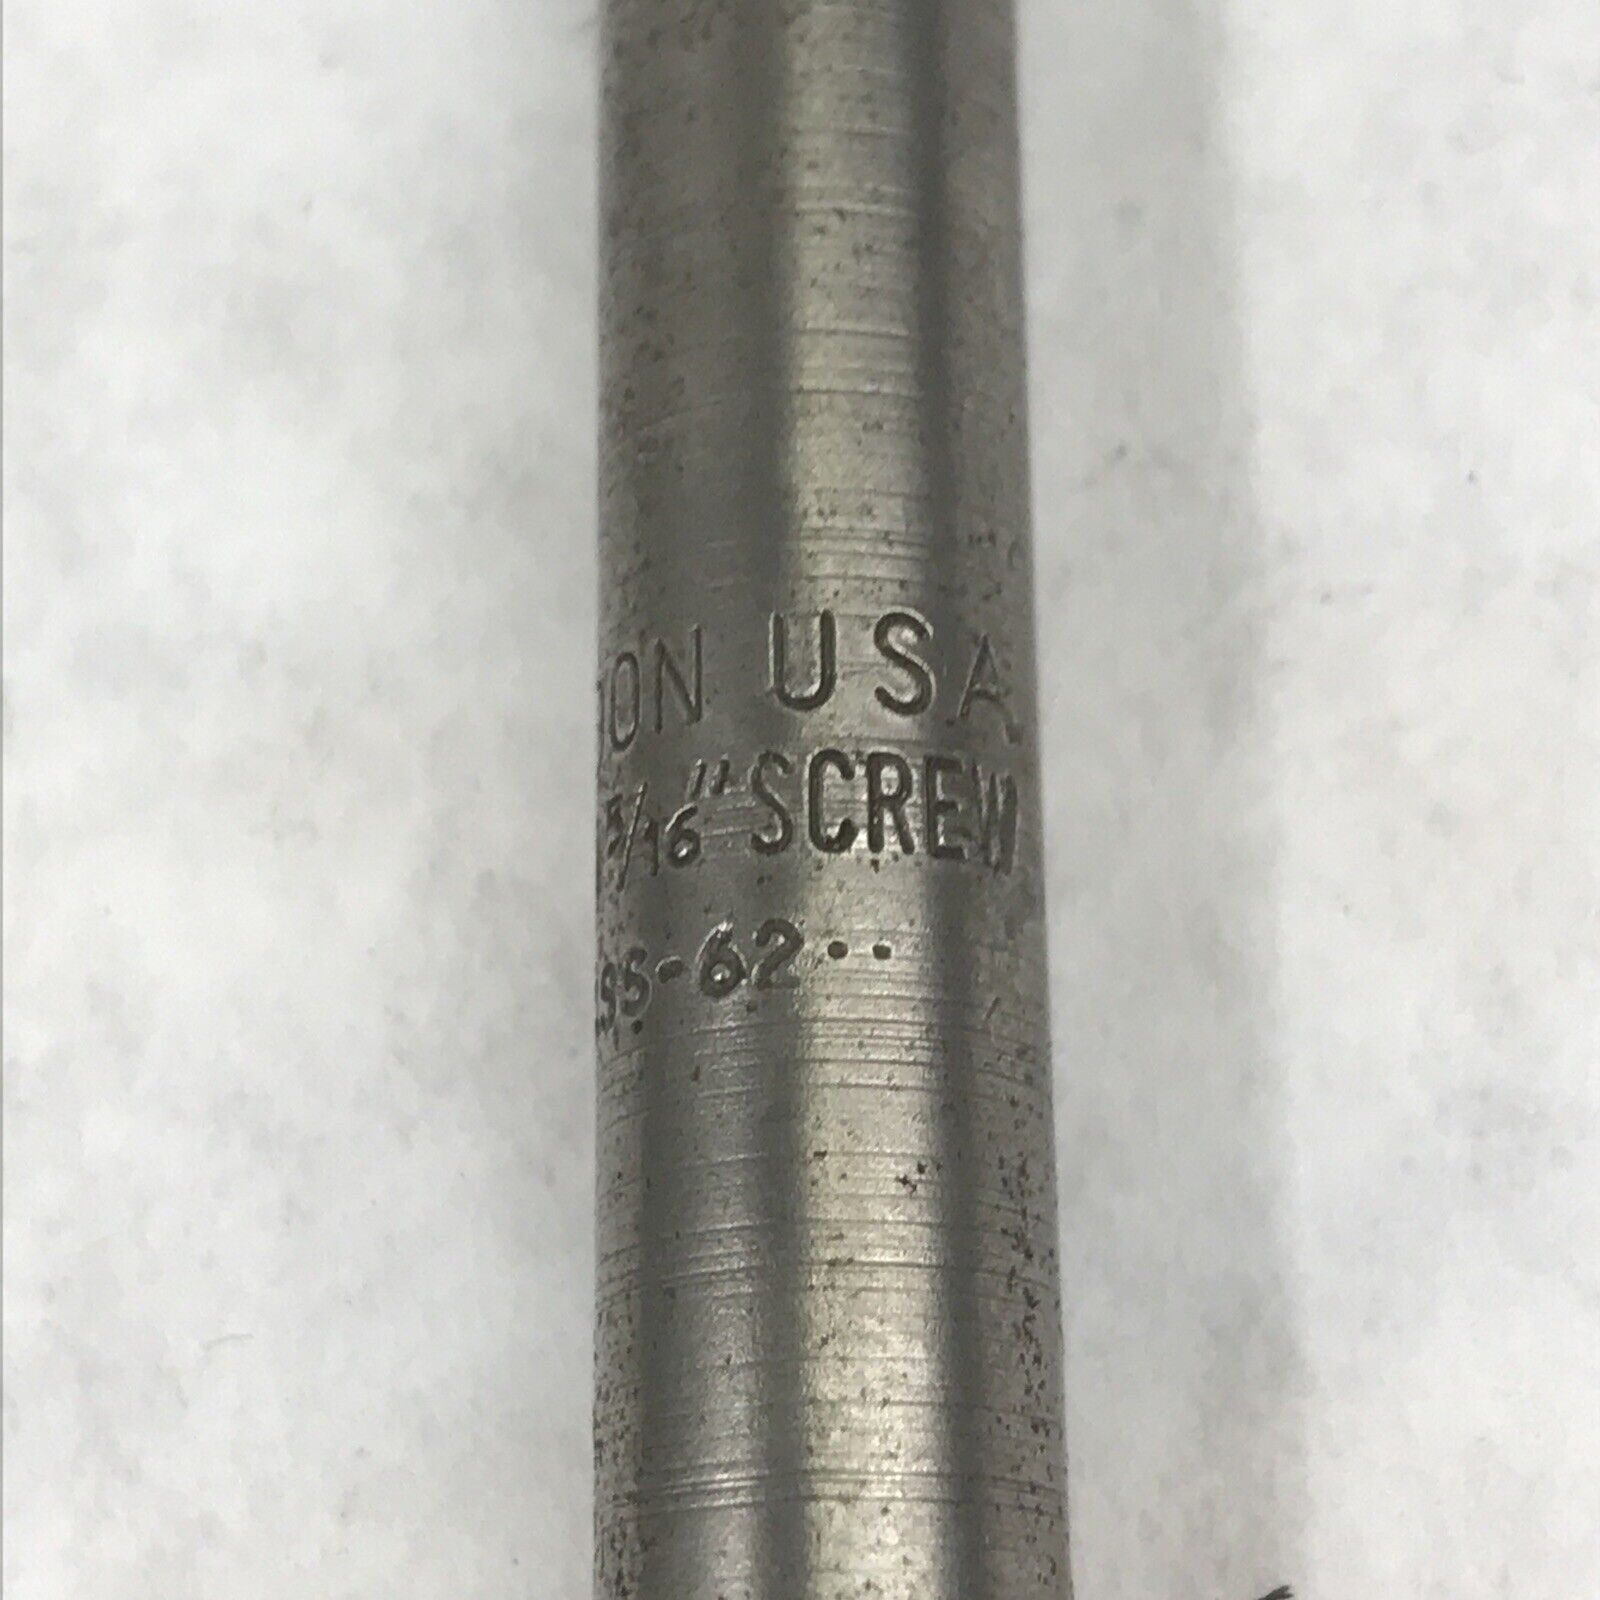 Weldon USA LGL-10 3/16" Screw MSS-62 3/4" Cutting Length End Mill Router Bit